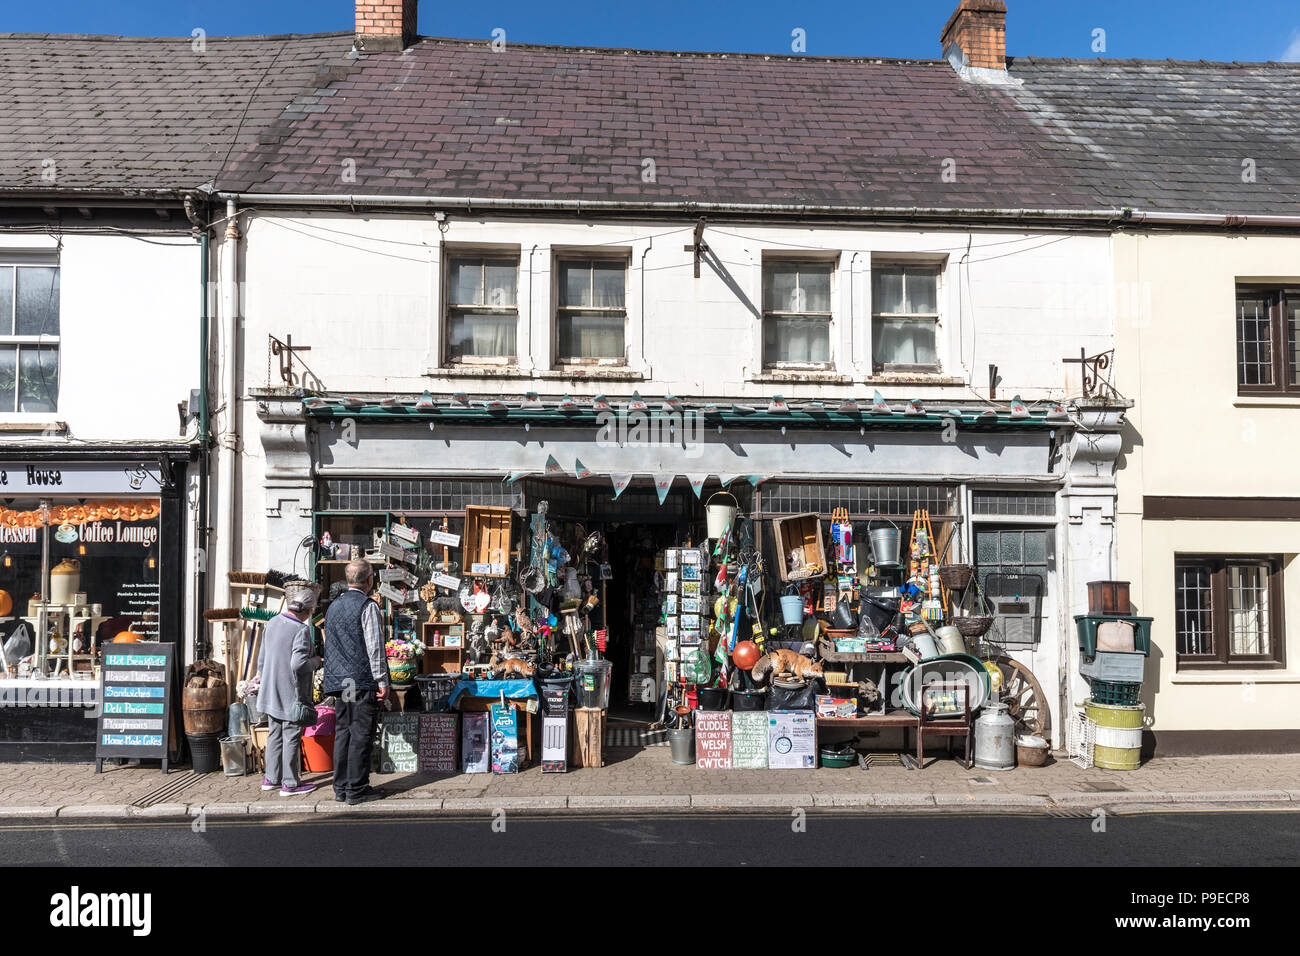 Le persone in cerca di merce in vendita nel negozio, Usk, Wales, Regno Unito Foto Stock